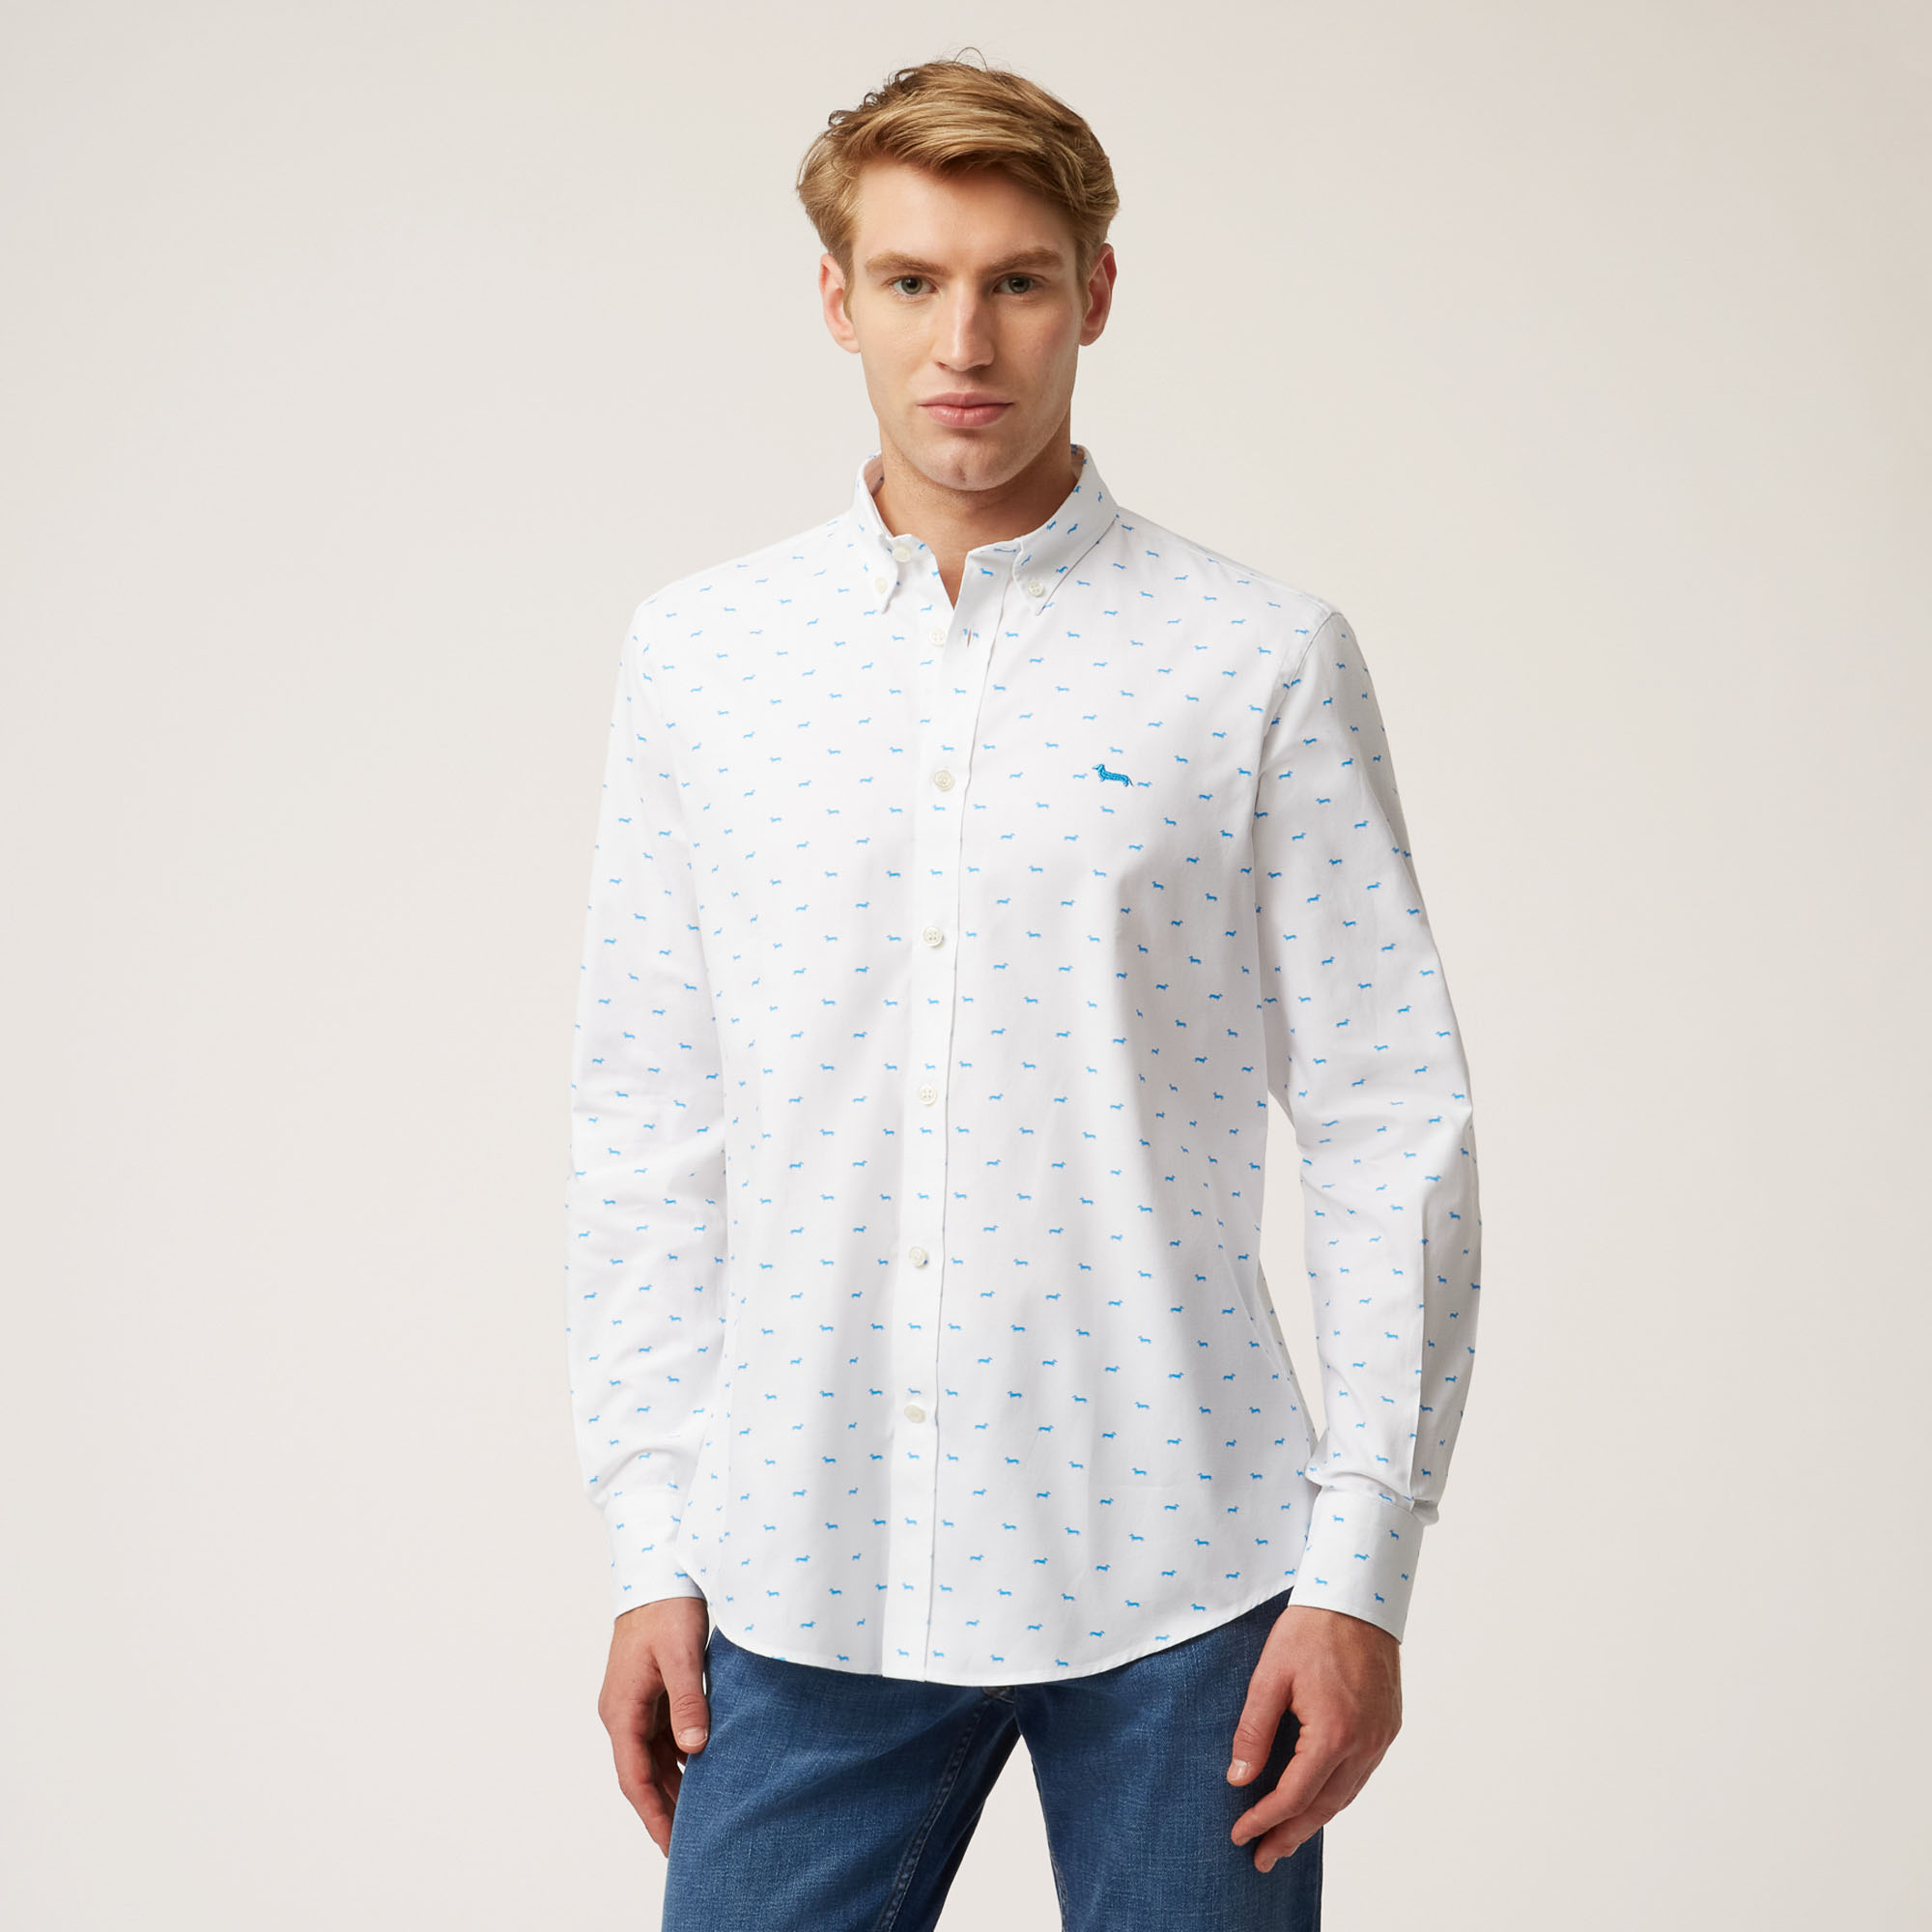 Camisa De Algodón Con Motivo Integral De Teckels, Blanco, large